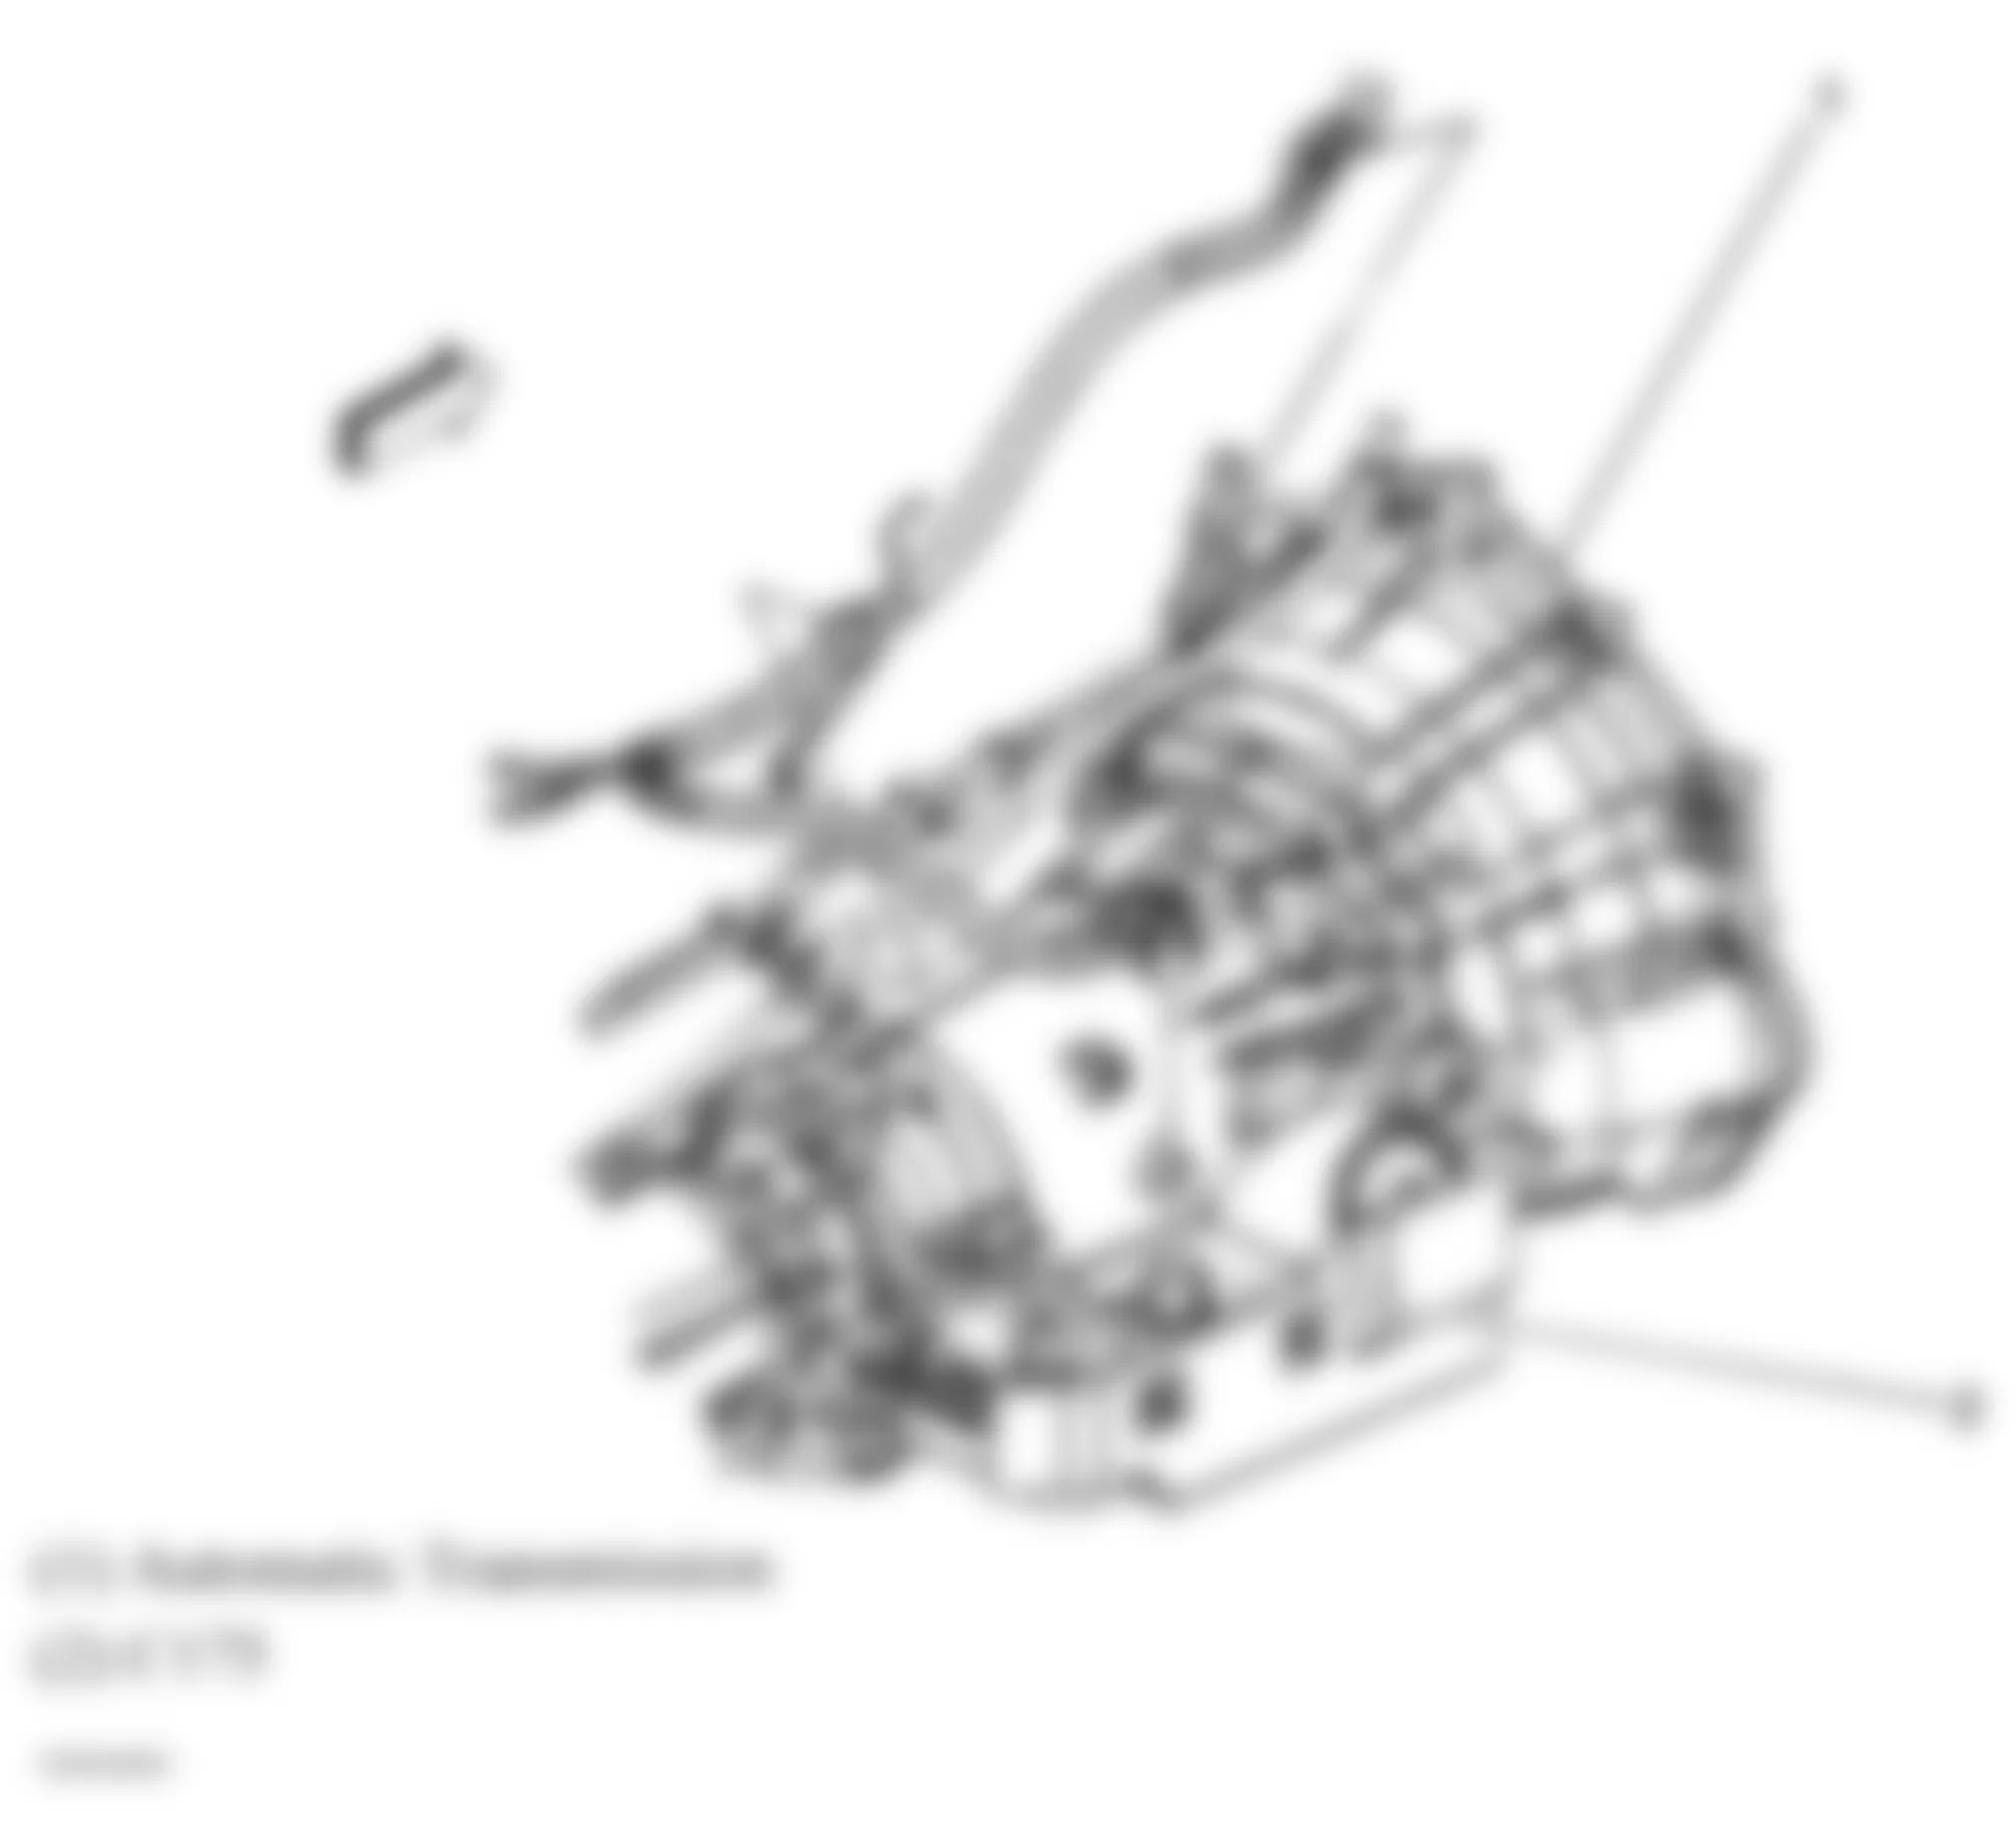 GMC Savana Special G3500 2007 - Component Locations -  Rear Of Transmission (4L60-E/4L65-E/4L70-E)